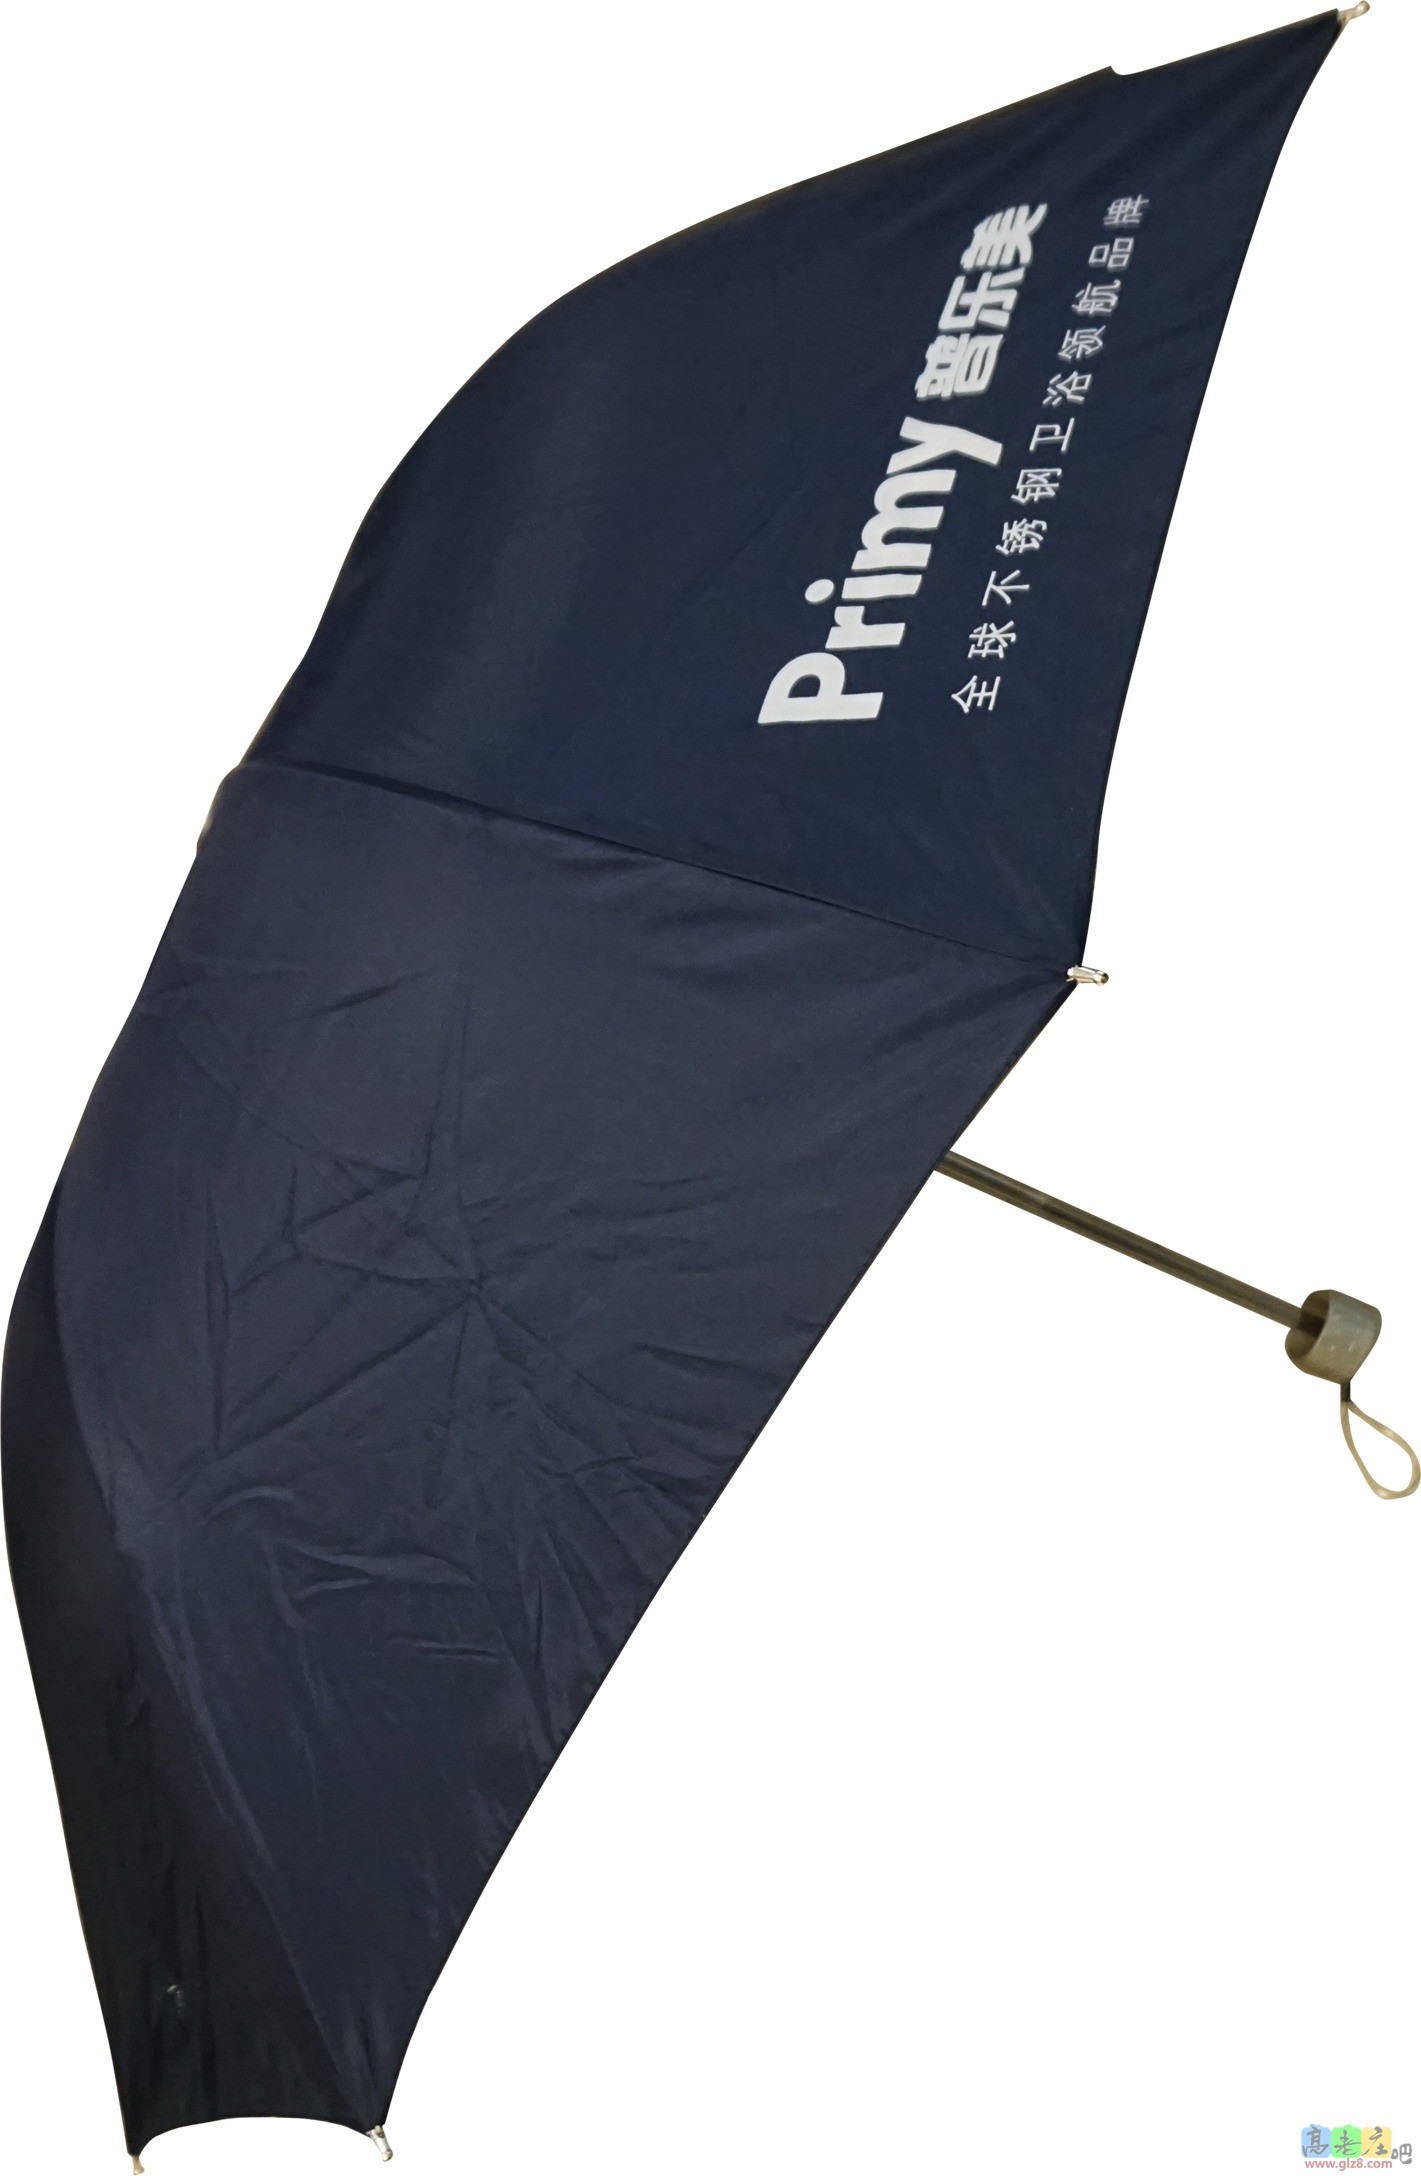 雨伞图片.JPG